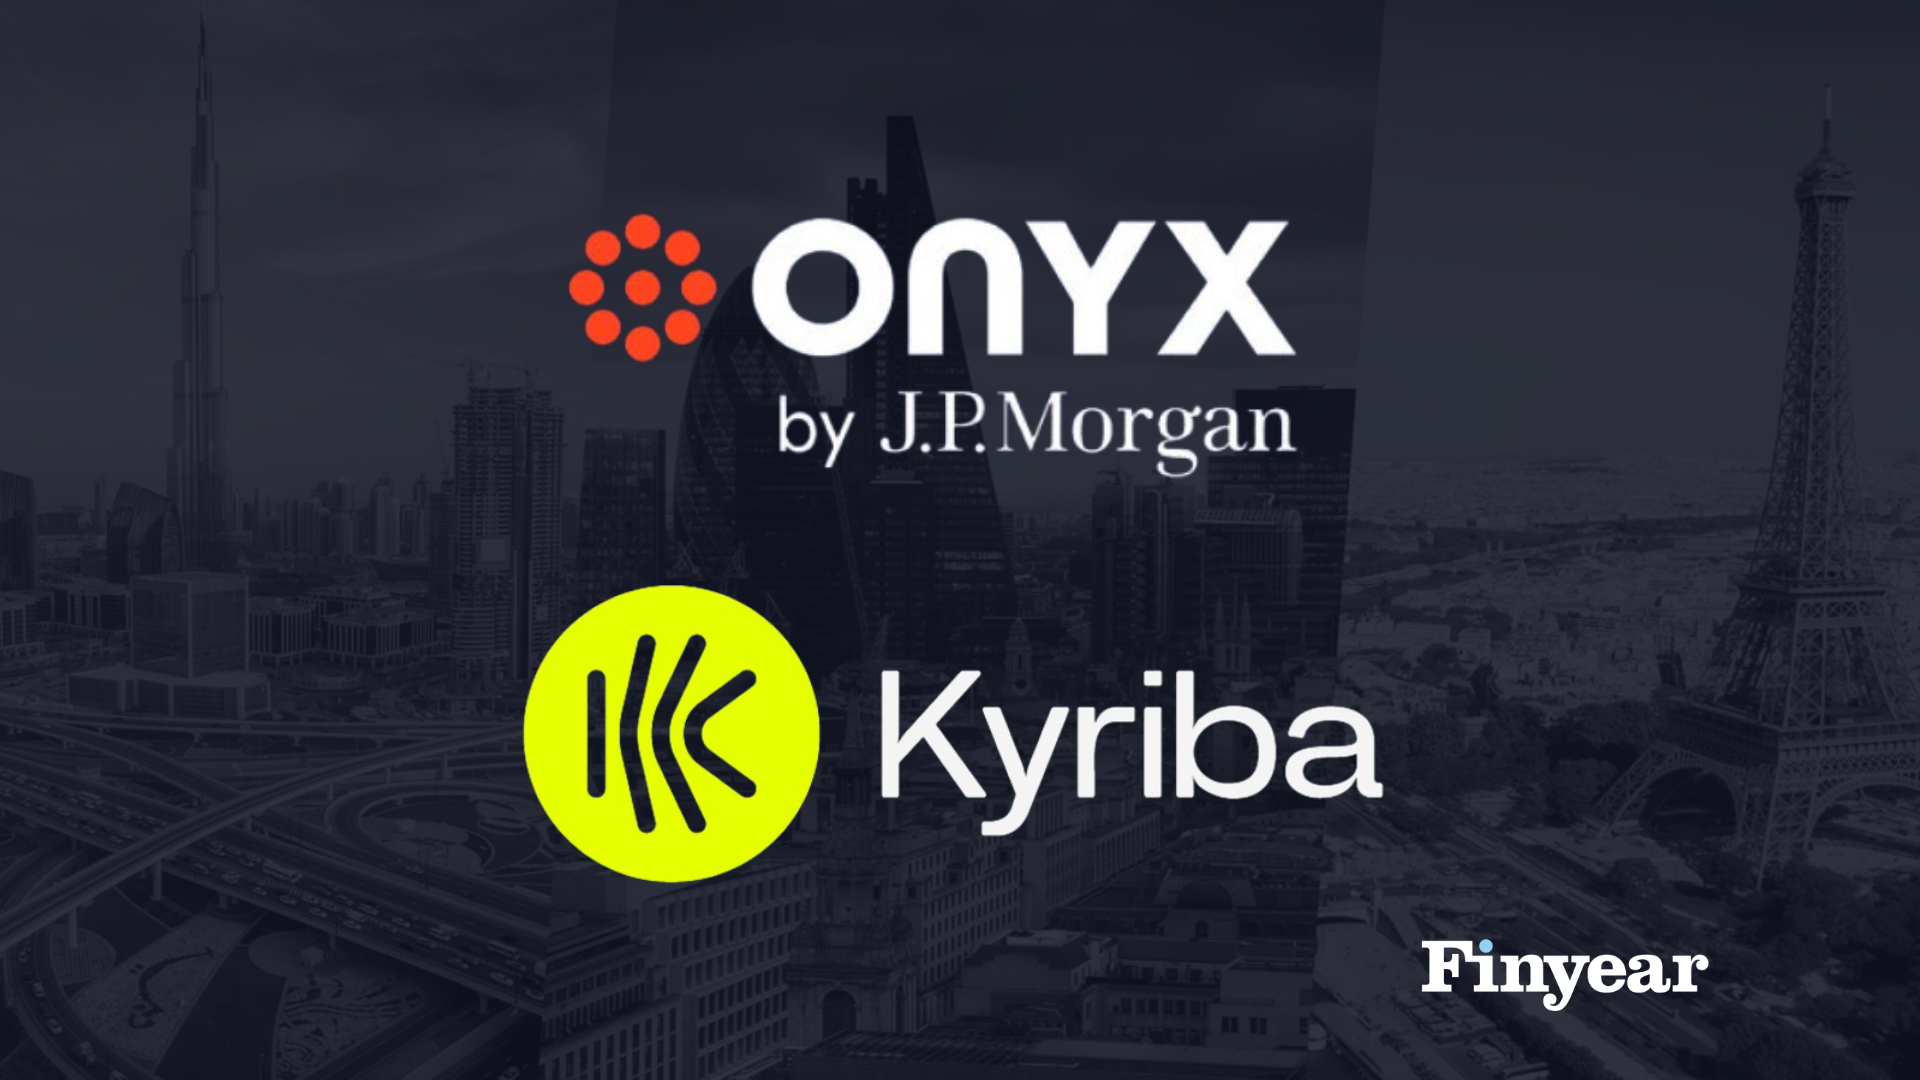 Kyriba et Onyx, filiale de J.P. Morgan, signent un partenariat pour introduire la monnaie numérique et la blockchain en matière de paiements transfrontaliers